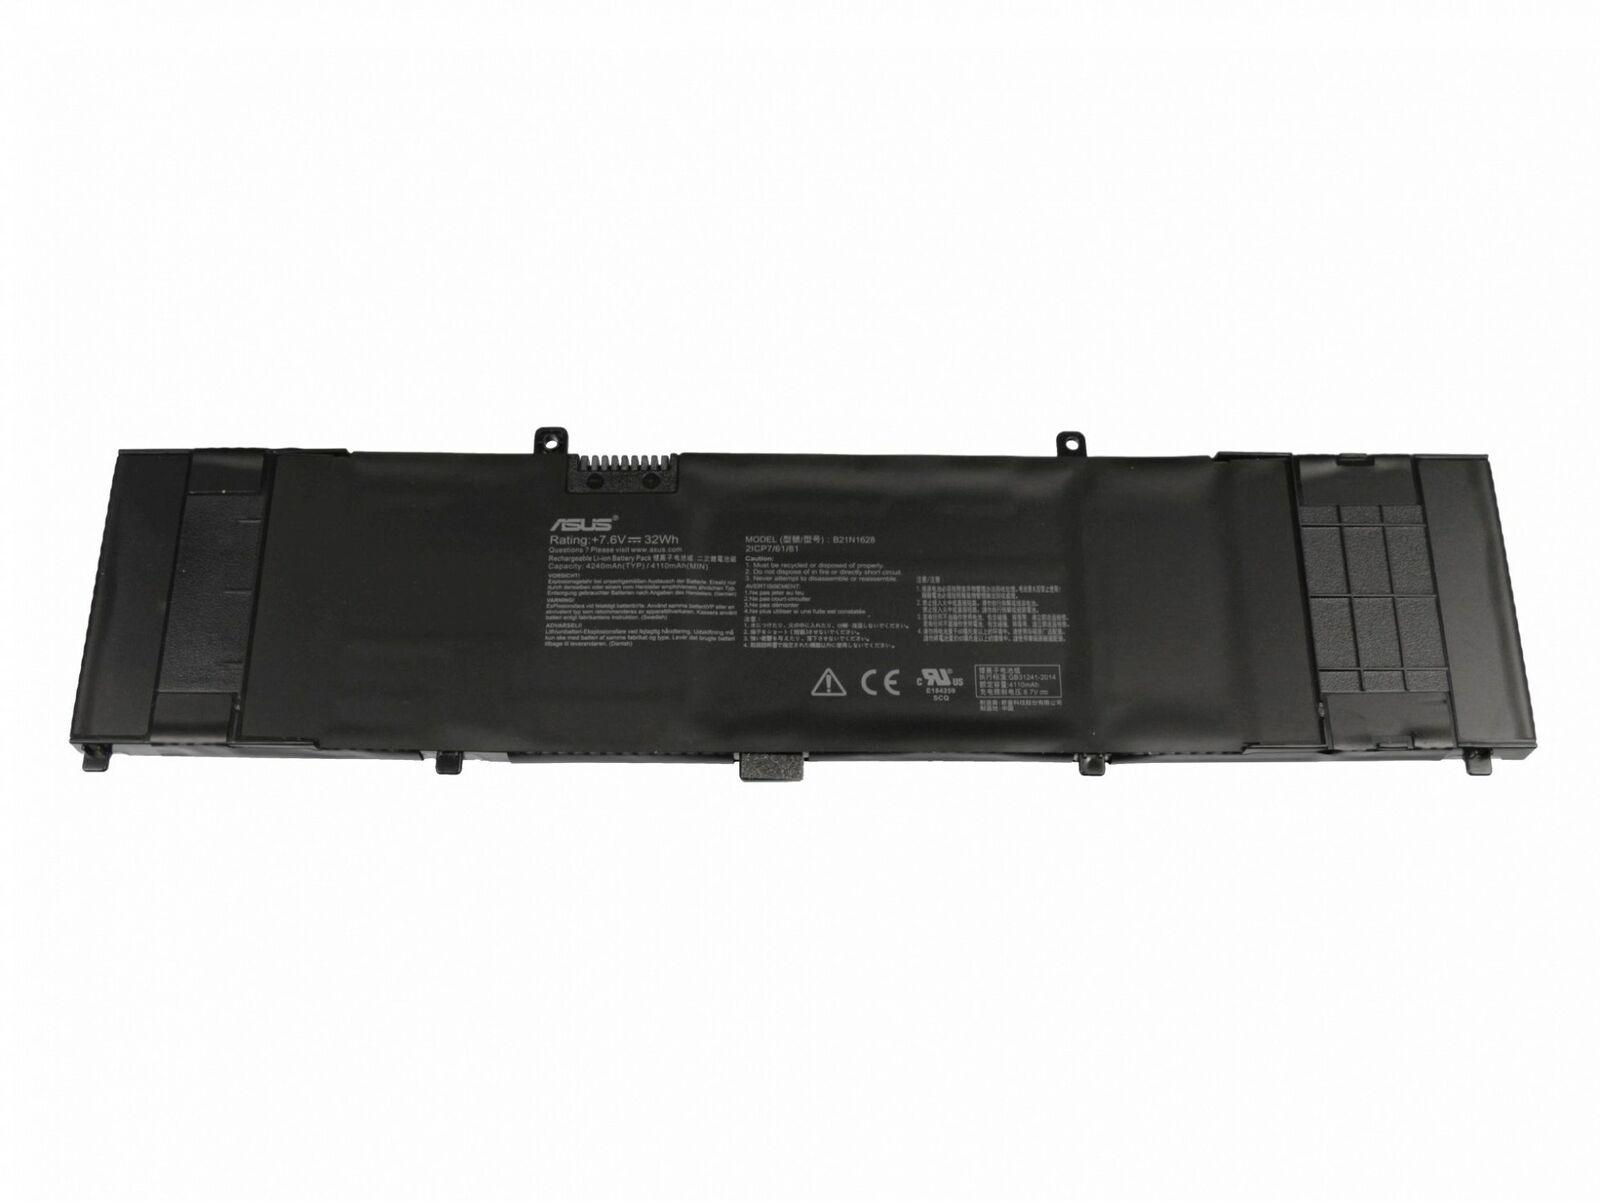 32W B21N1628 Original Laptop Battery For Asus U410UV X410UV X410UV2A